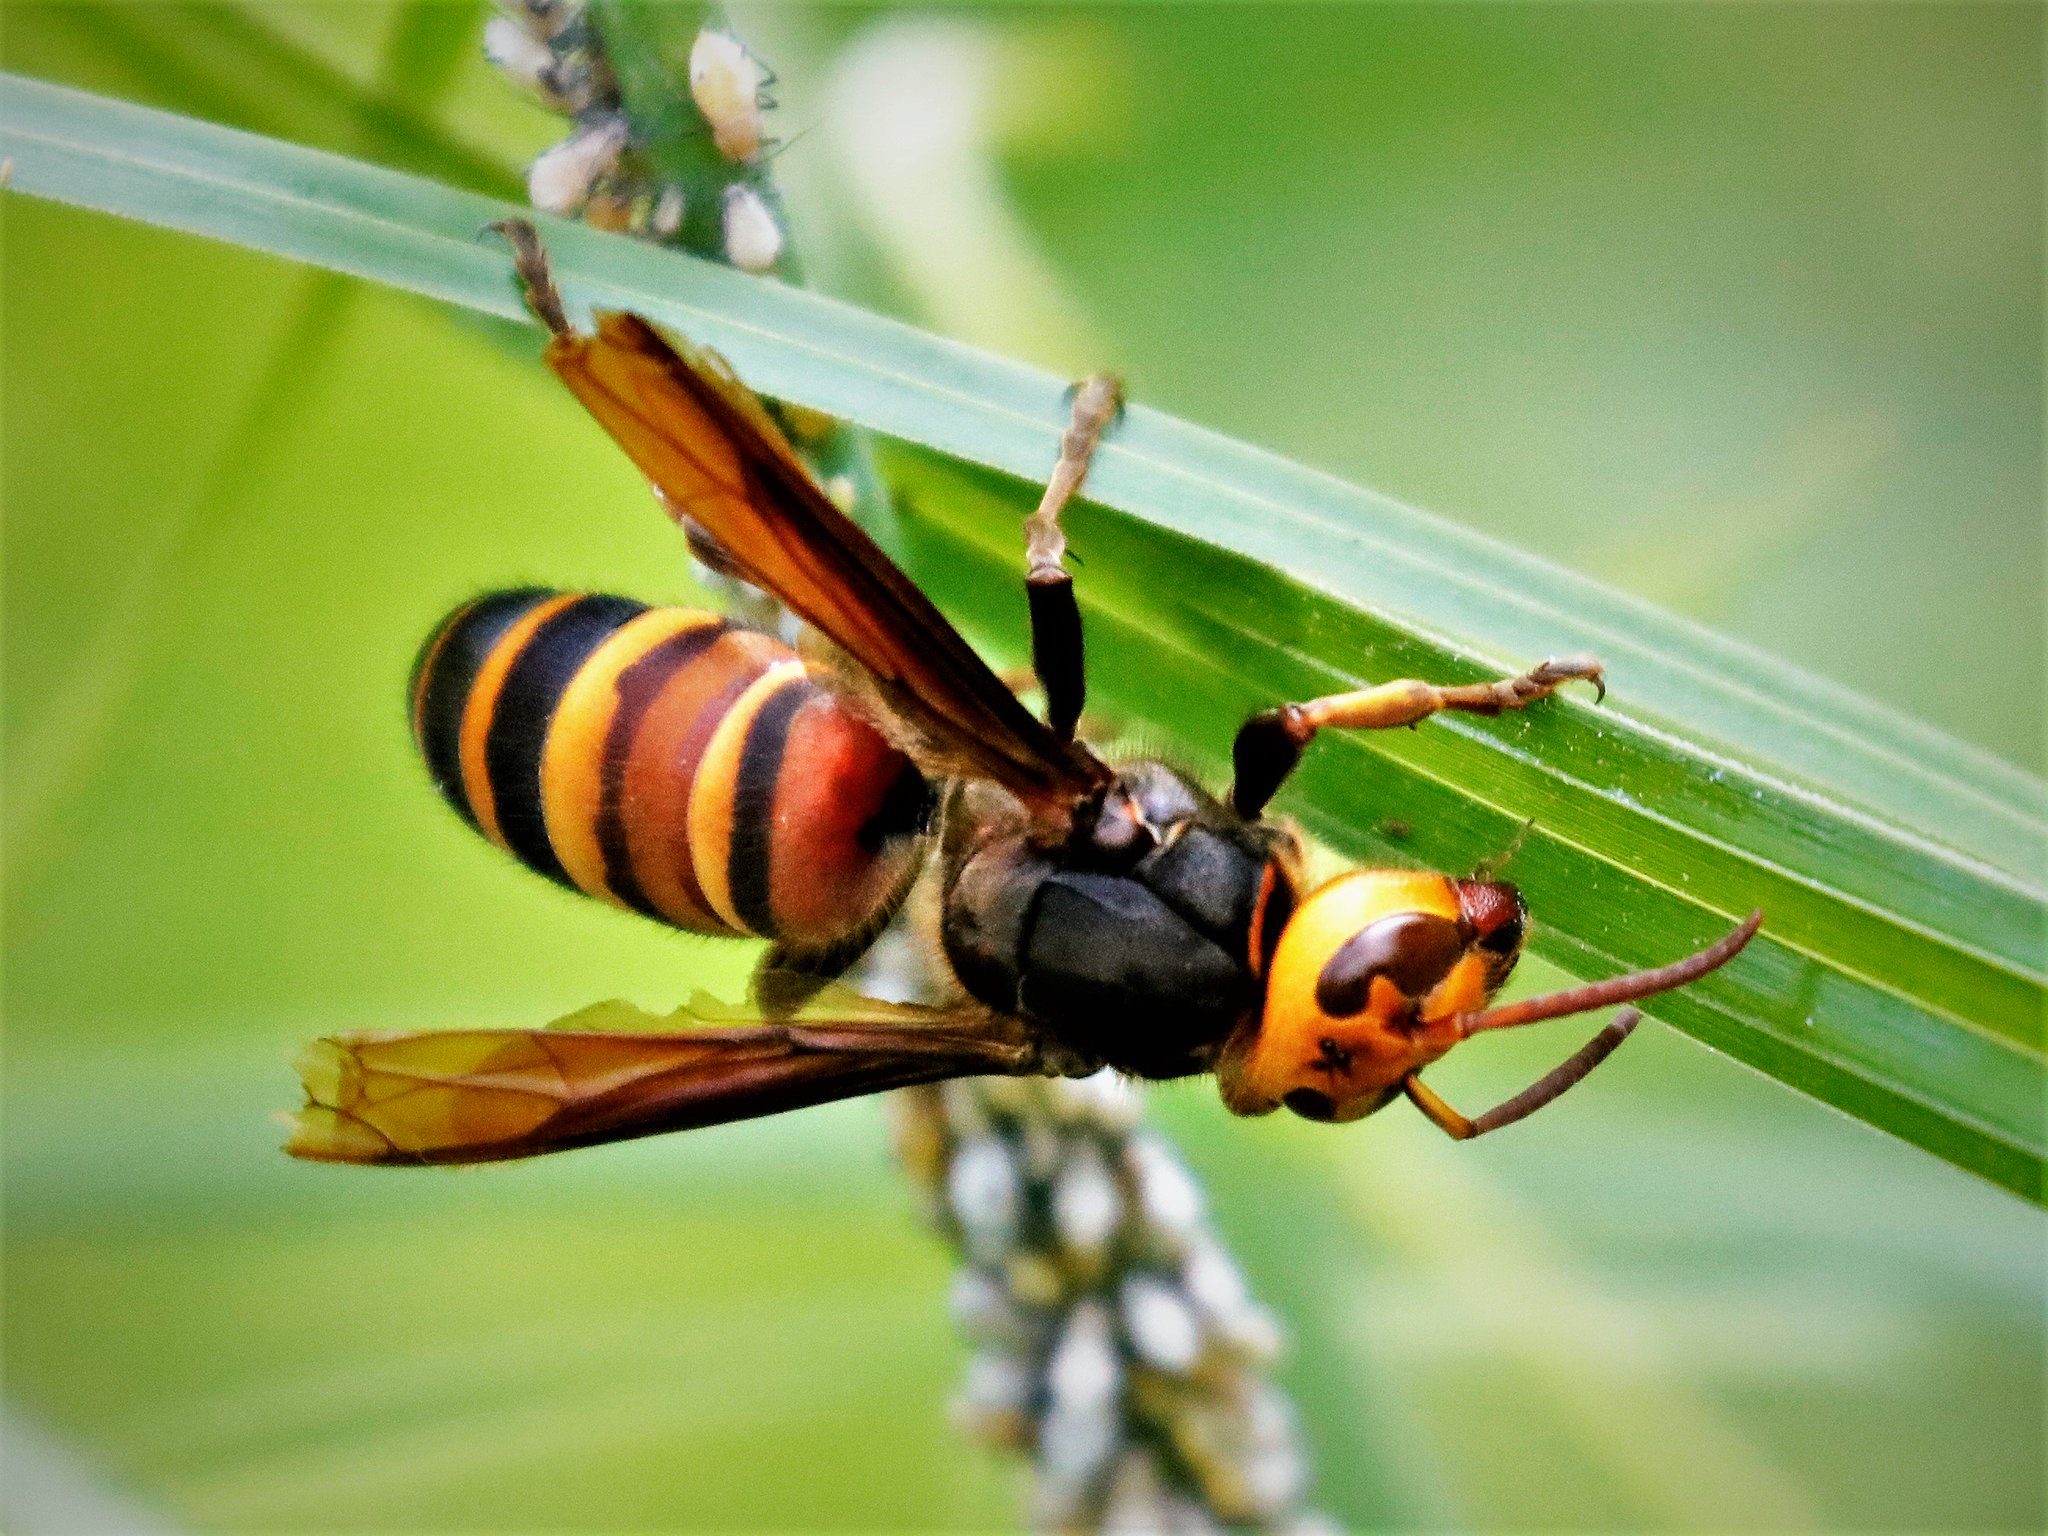 赤蜜蜂 ヒメスズメバチ オオスズメバチにしては小さいかな と調べたらヒメスズメバチの様です お尻の先が黒いのが判別ポイントです